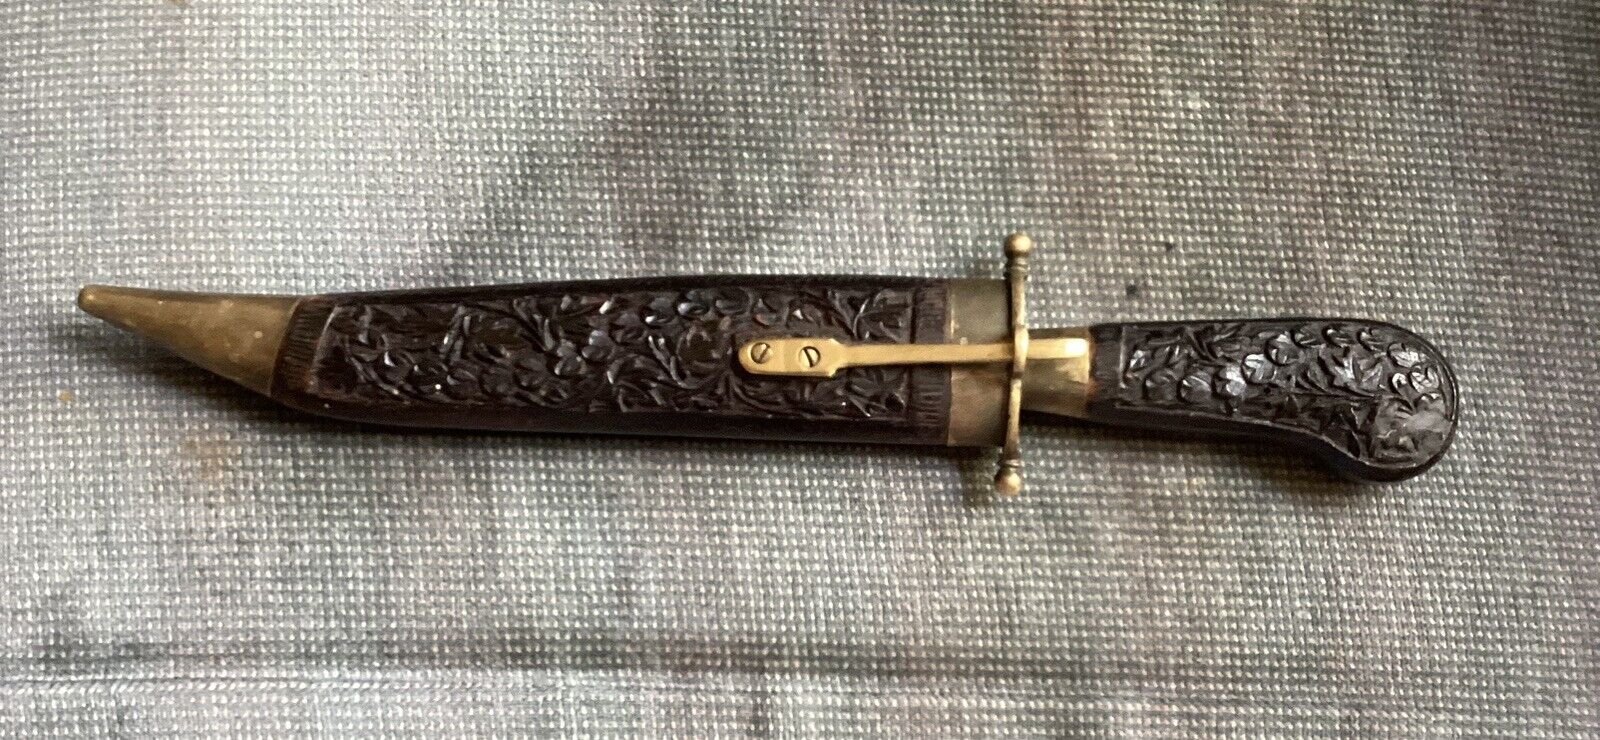 13” Antique Vintage Knife Blade Hand Carved Wooden Sheath 8” Blade